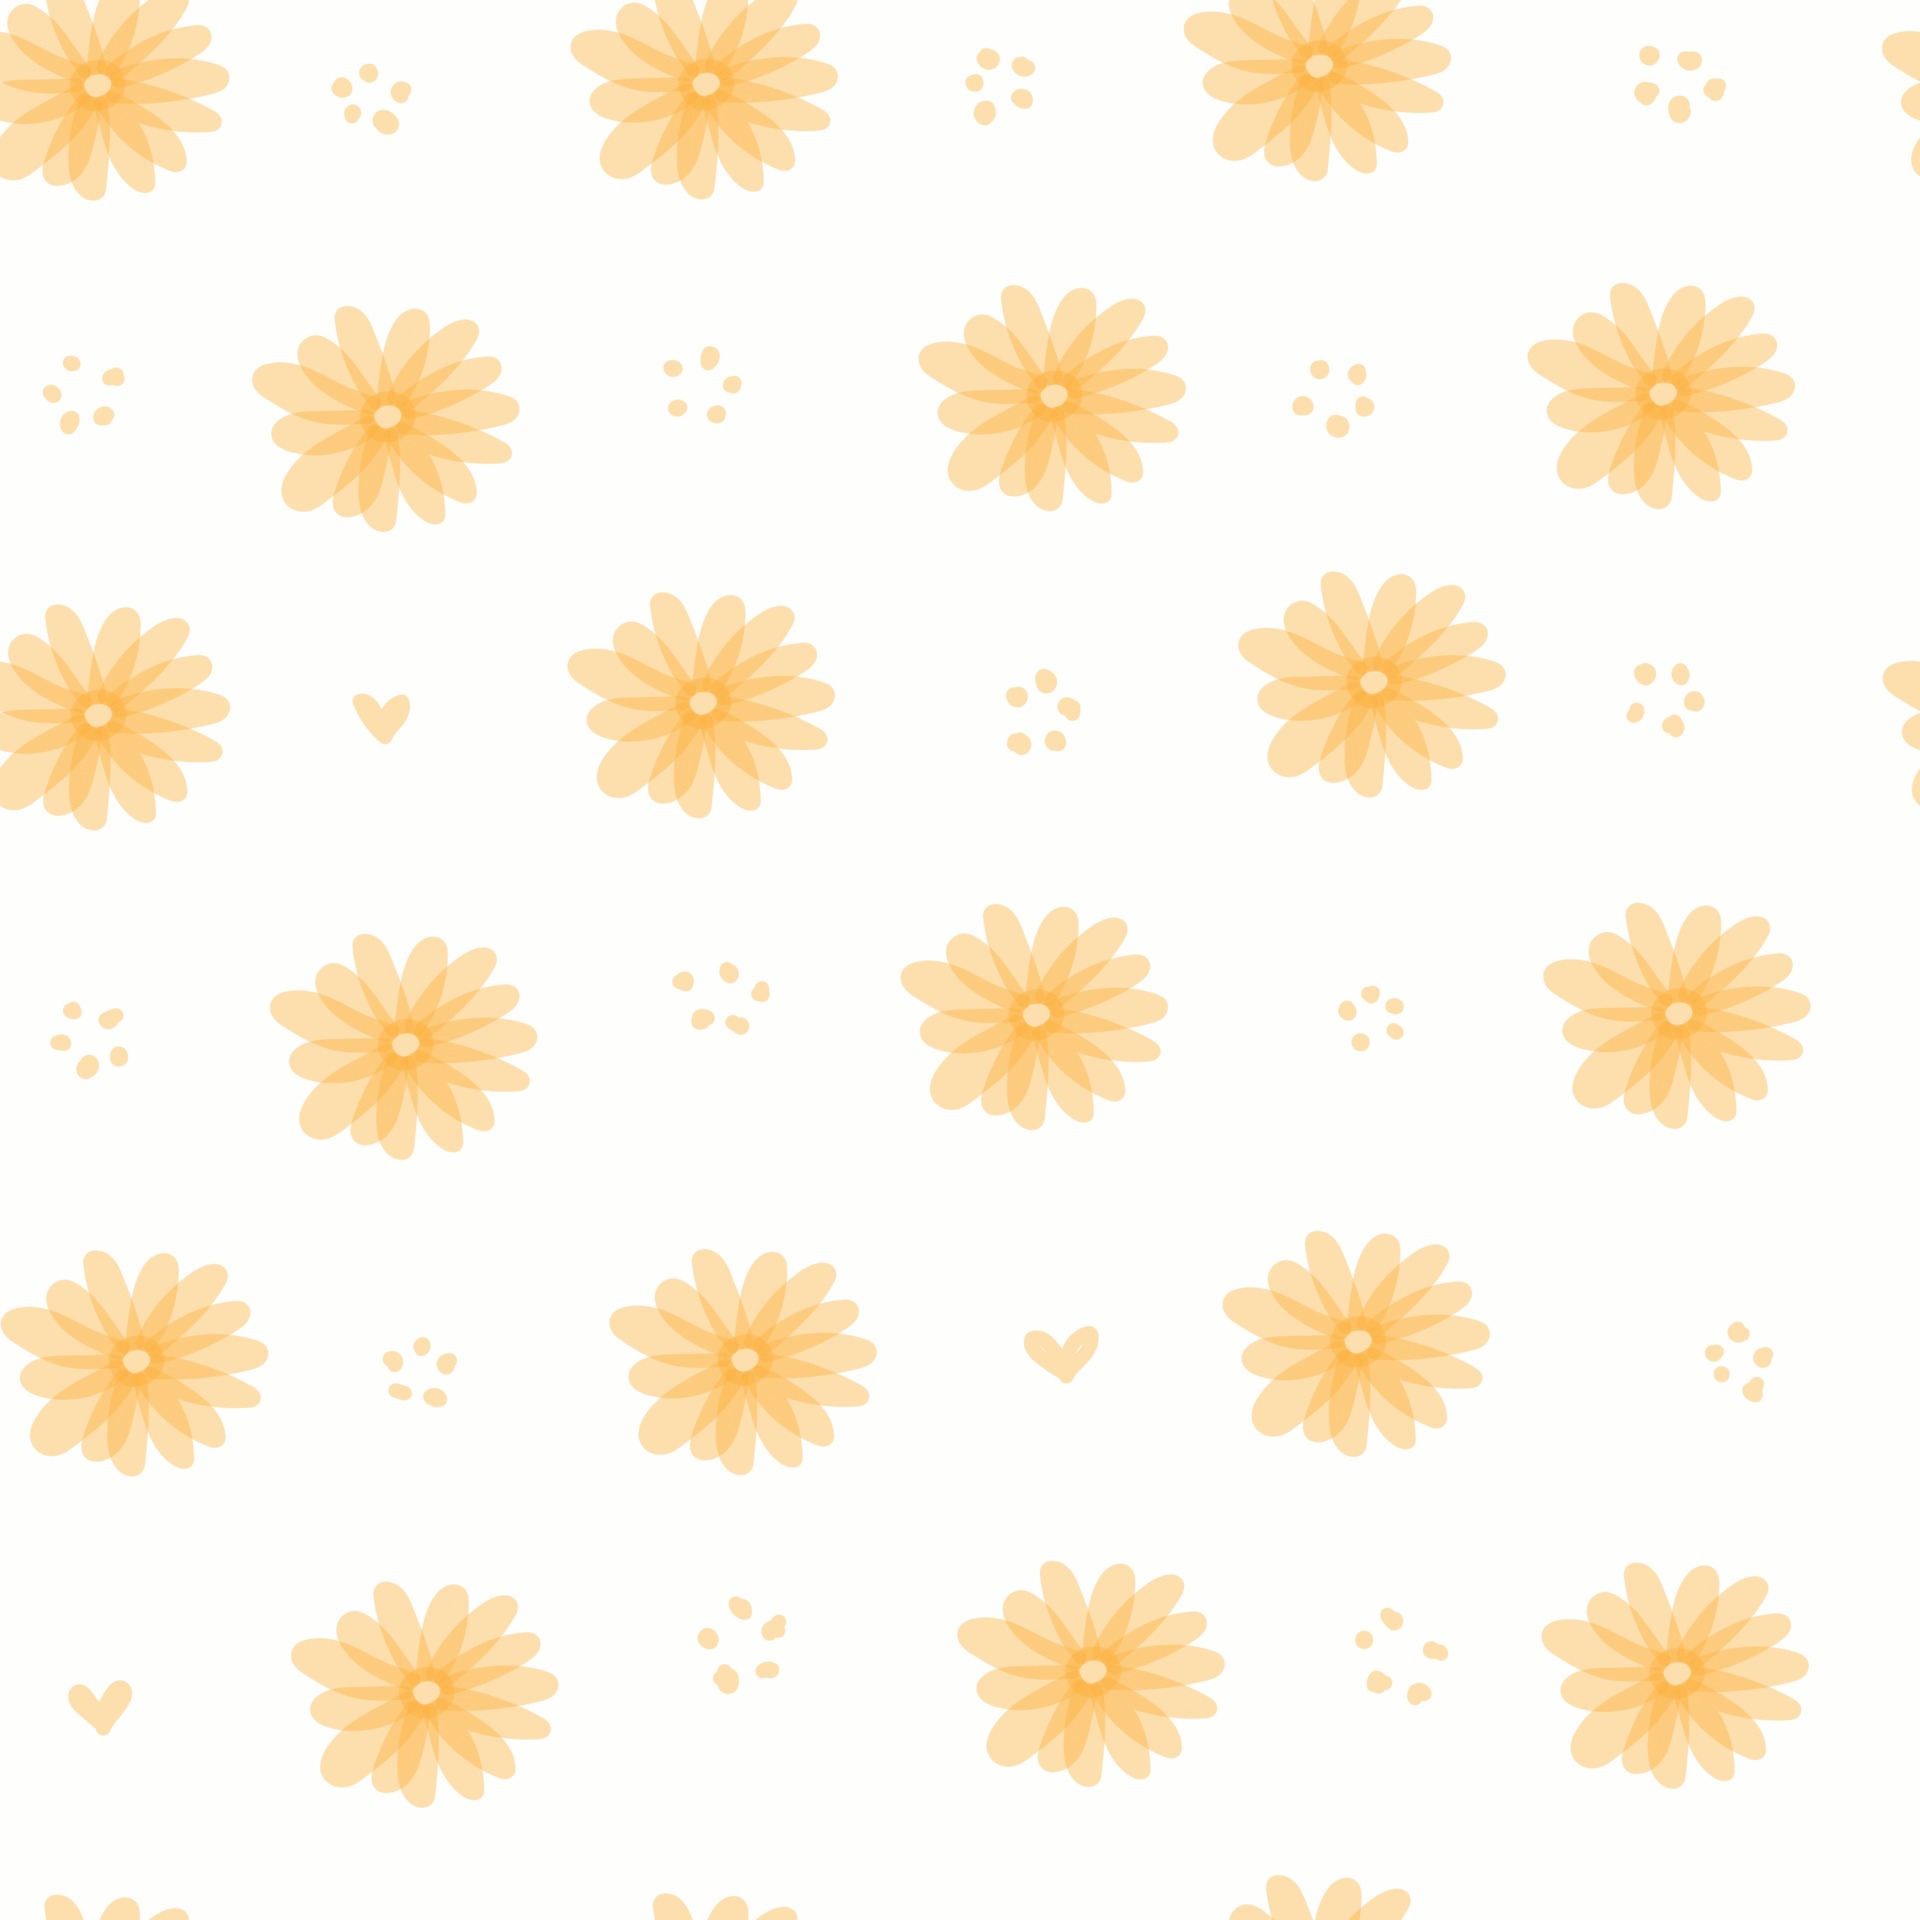 Các mẫu hoa cam nhạt được trang trí trên nền trắng tạo nên sự dễ thương và ngọt ngào cho bức tranh Cute pastel white pattern orange flowers hearts Seamless. Chúng sẽ khiến bạn cảm thấy như đang sống trong một thế giới cổ tích, nơi mọi thứ đều dịu dàng và hồn nhiên. Cùng xem và cảm nhận điều đó.